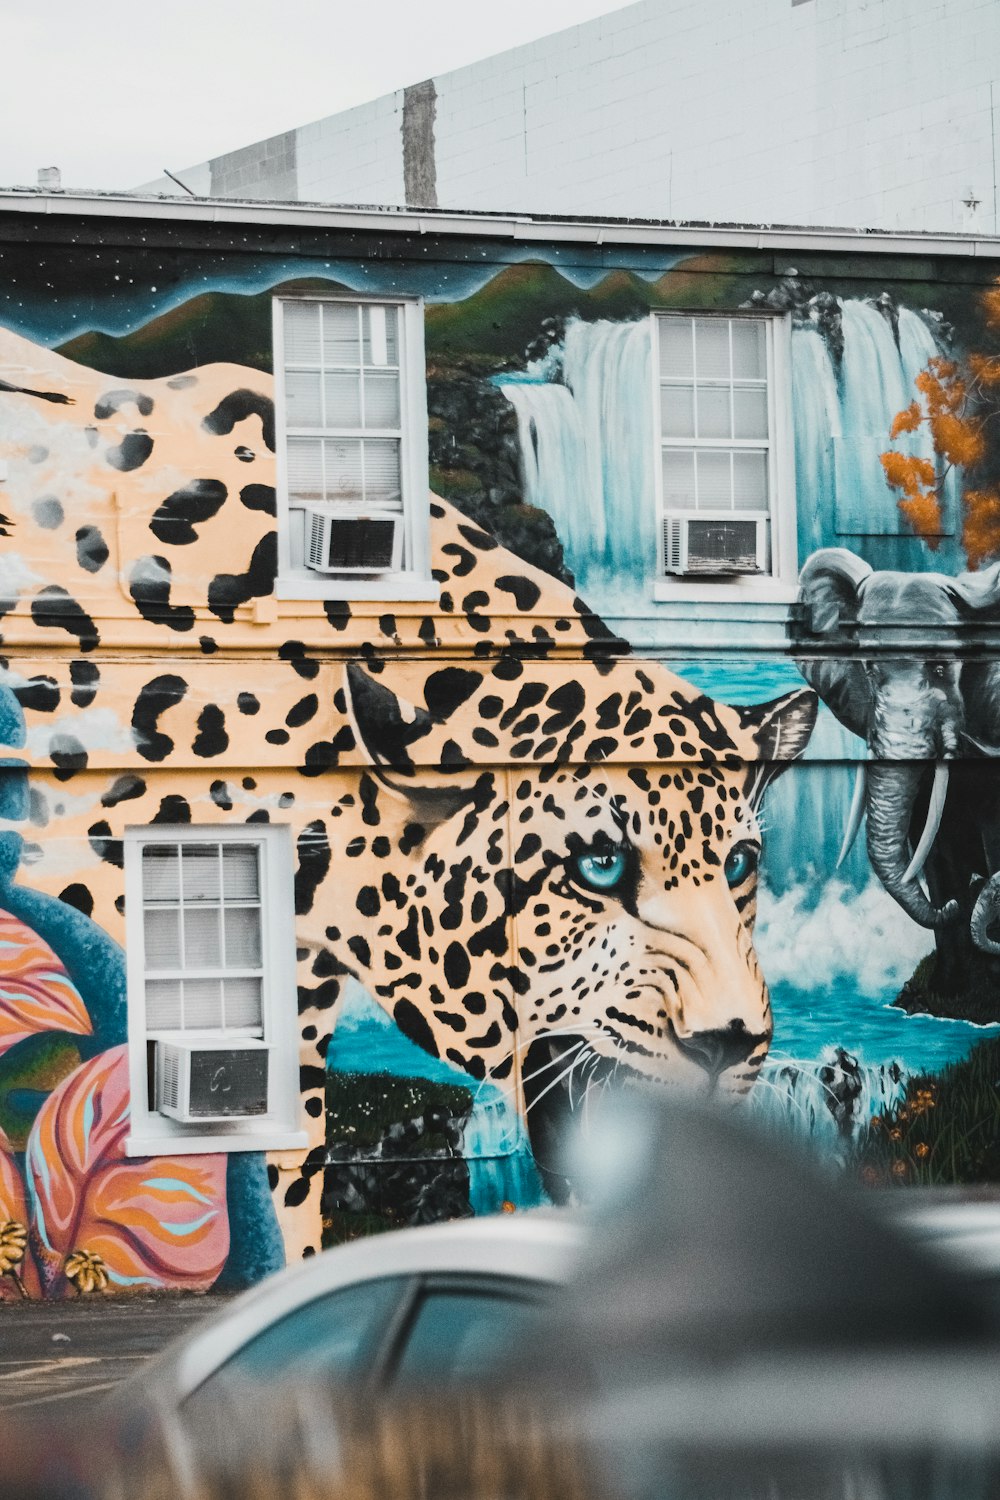 Une peinture murale d’un léopard et d’un tigre sur le côté d’un bâtiment